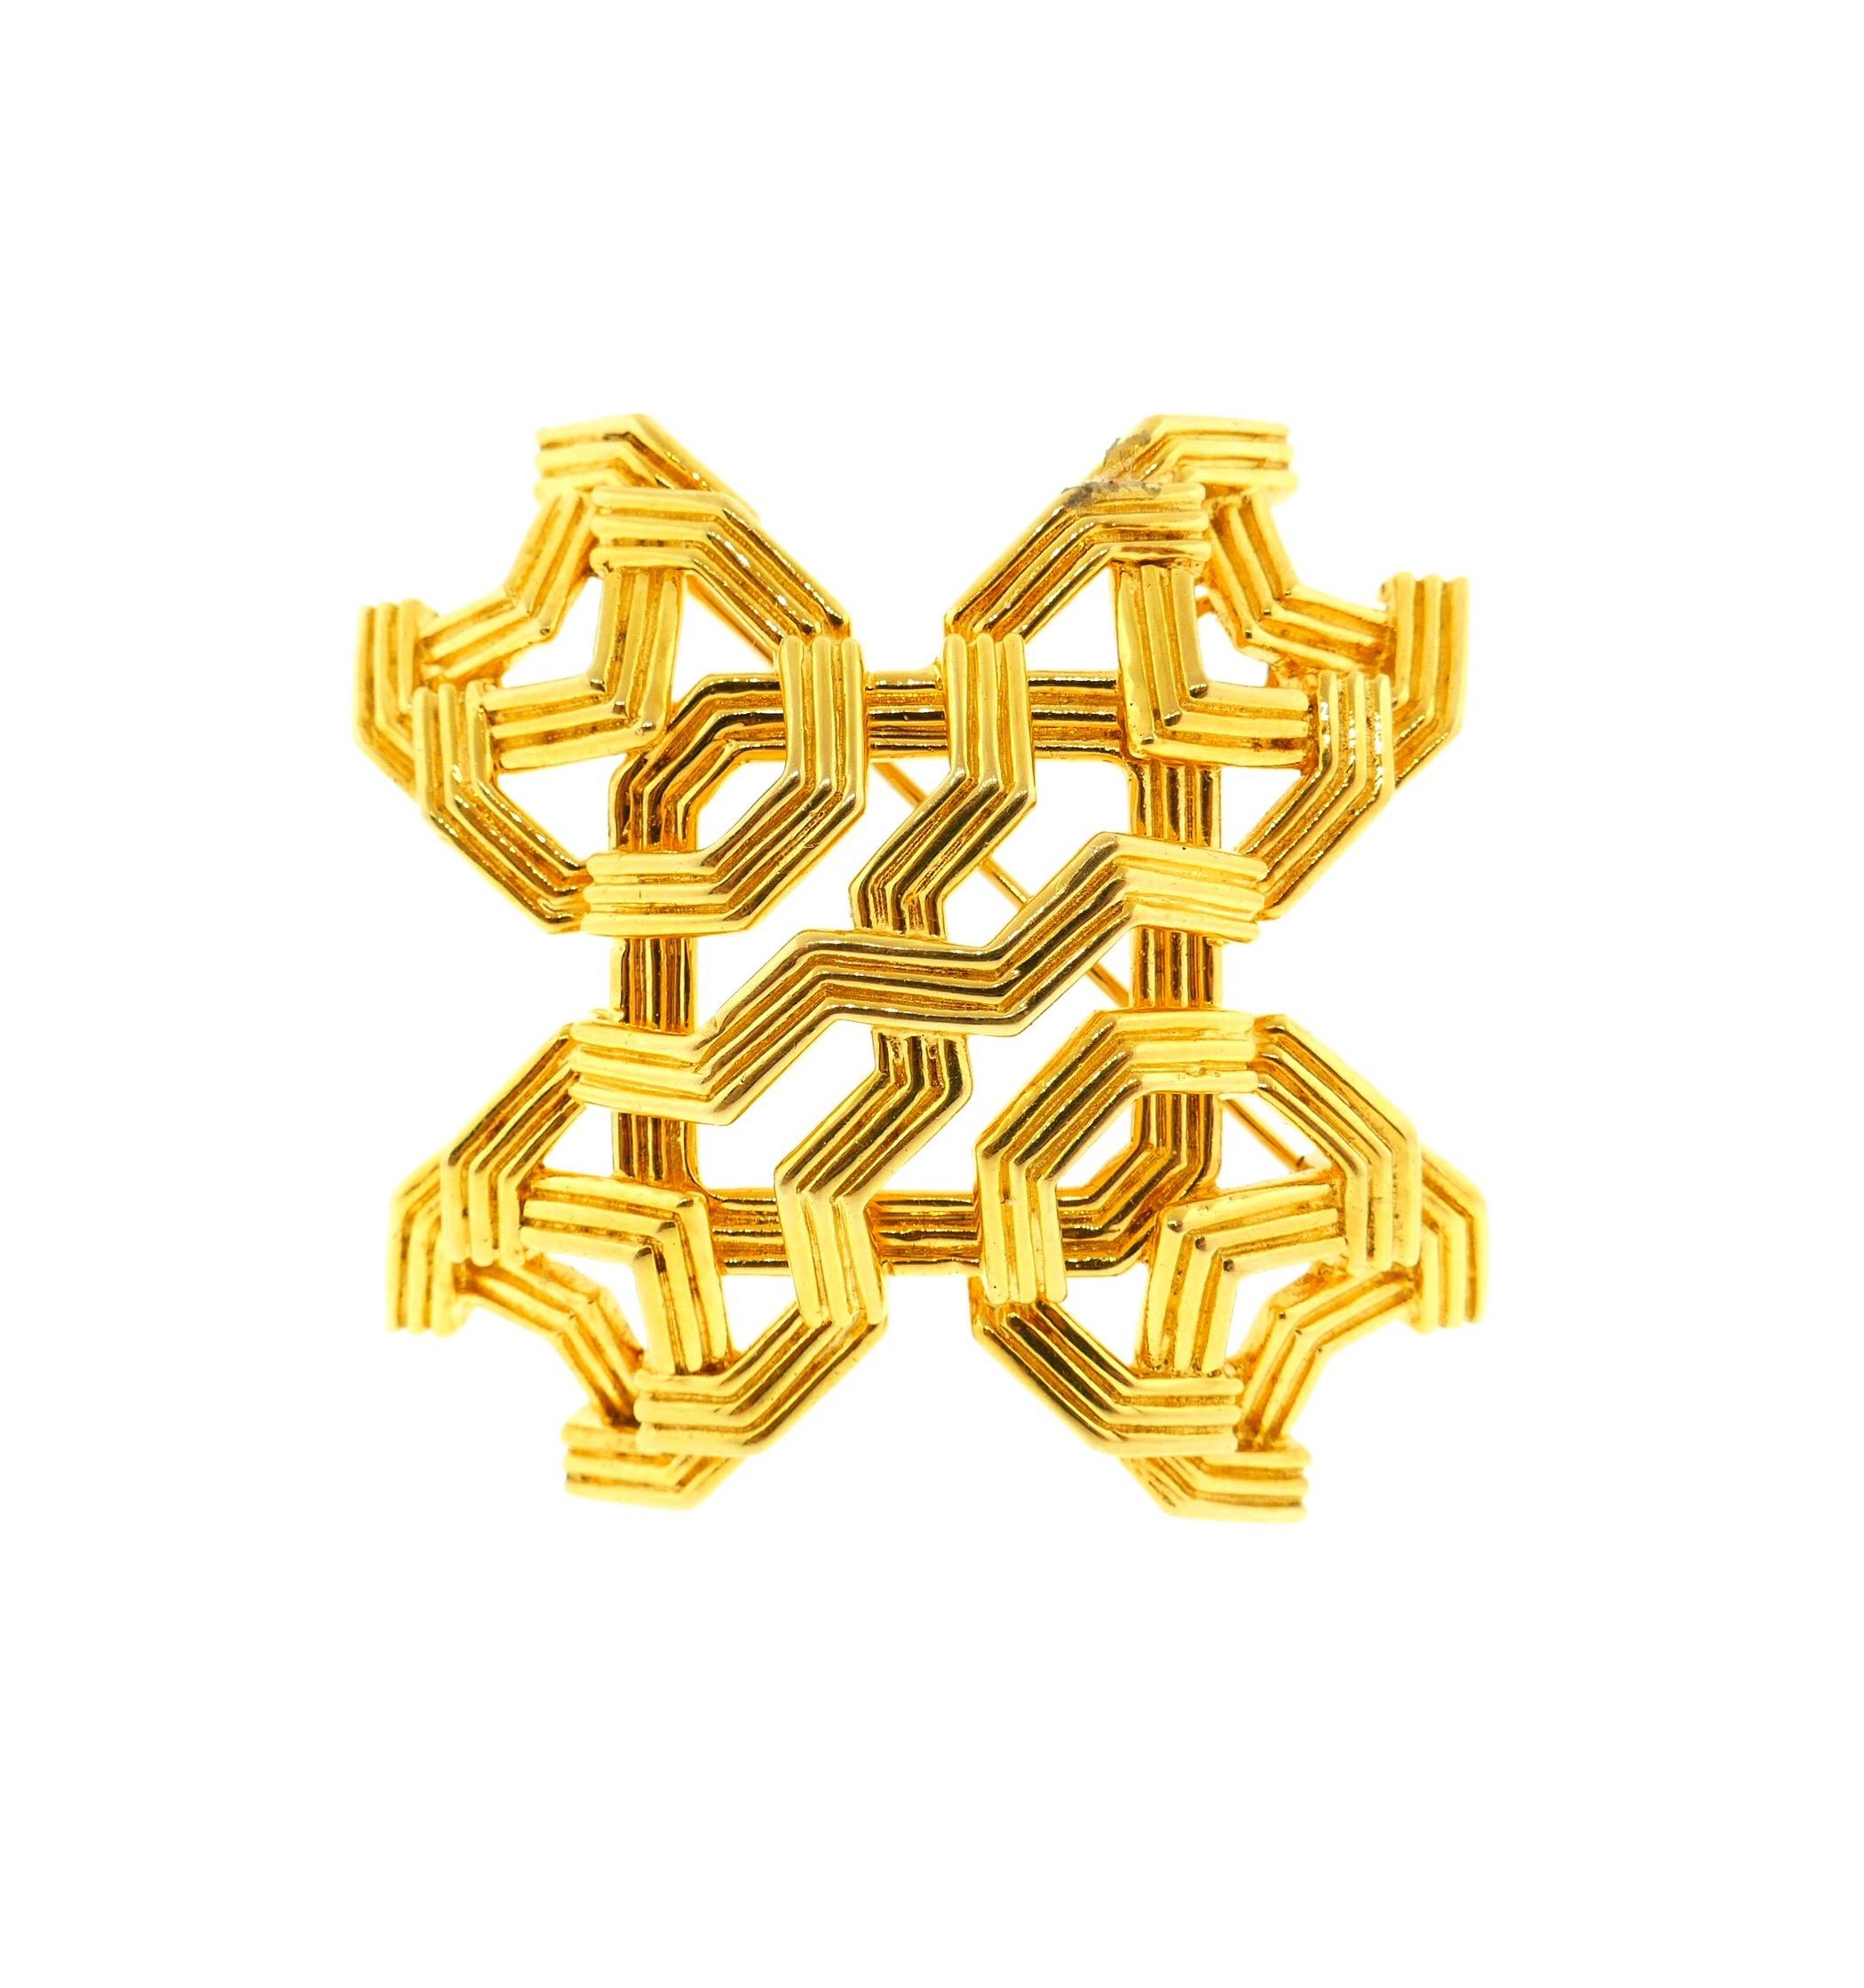 Geometrische Kreuzbrosche oder Anhänger von Tiffany & Co. aus 18 Karat Gelbgold

Dies ist ein sehr einzigartiges Stück. Dieses geometrische Kreuz von Tiffany & Co. kann als Brosche oder als Anhänger getragen werden. Dieses Kreuz ist in einem sehr